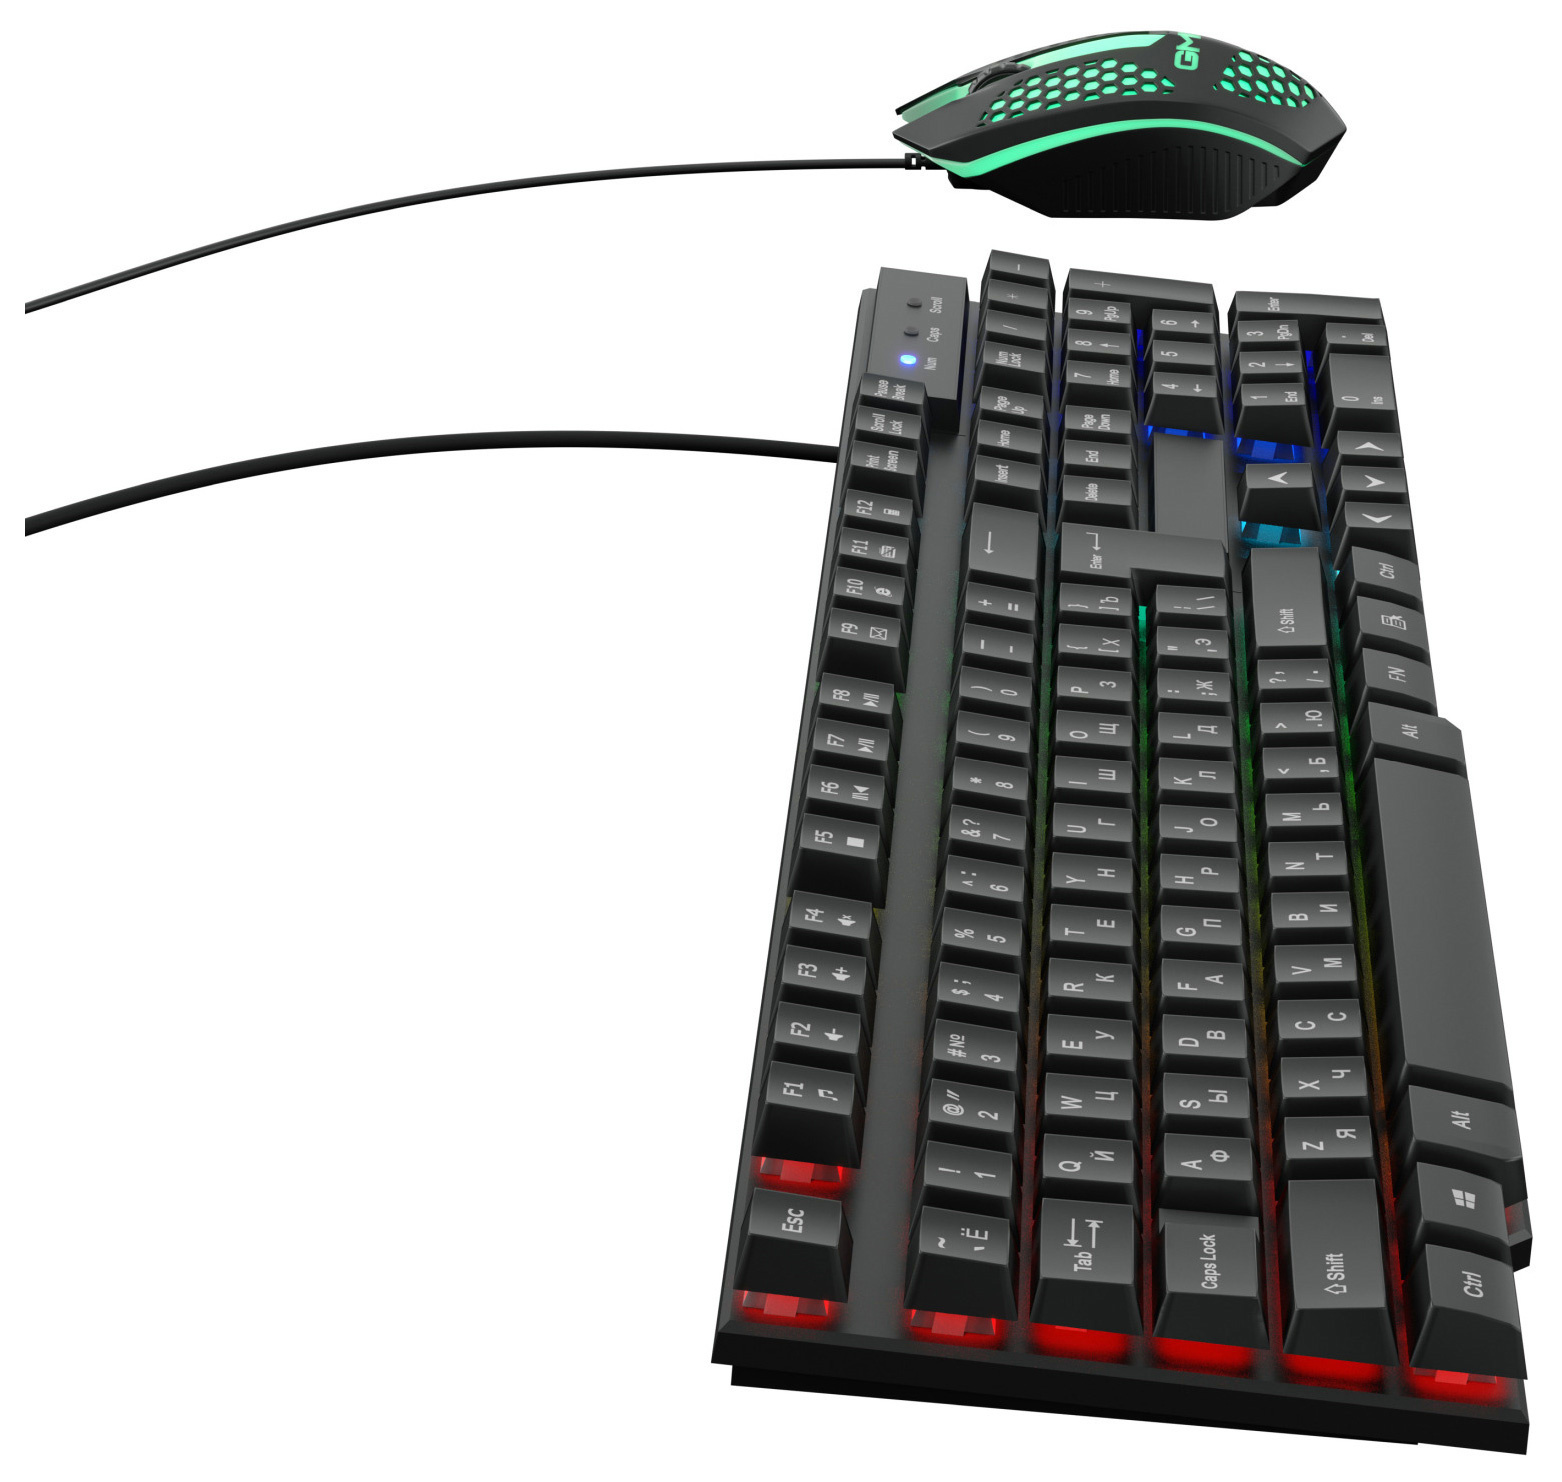 Клавиатура + мышь Оклик GMNG 400GMK черный (1546779)